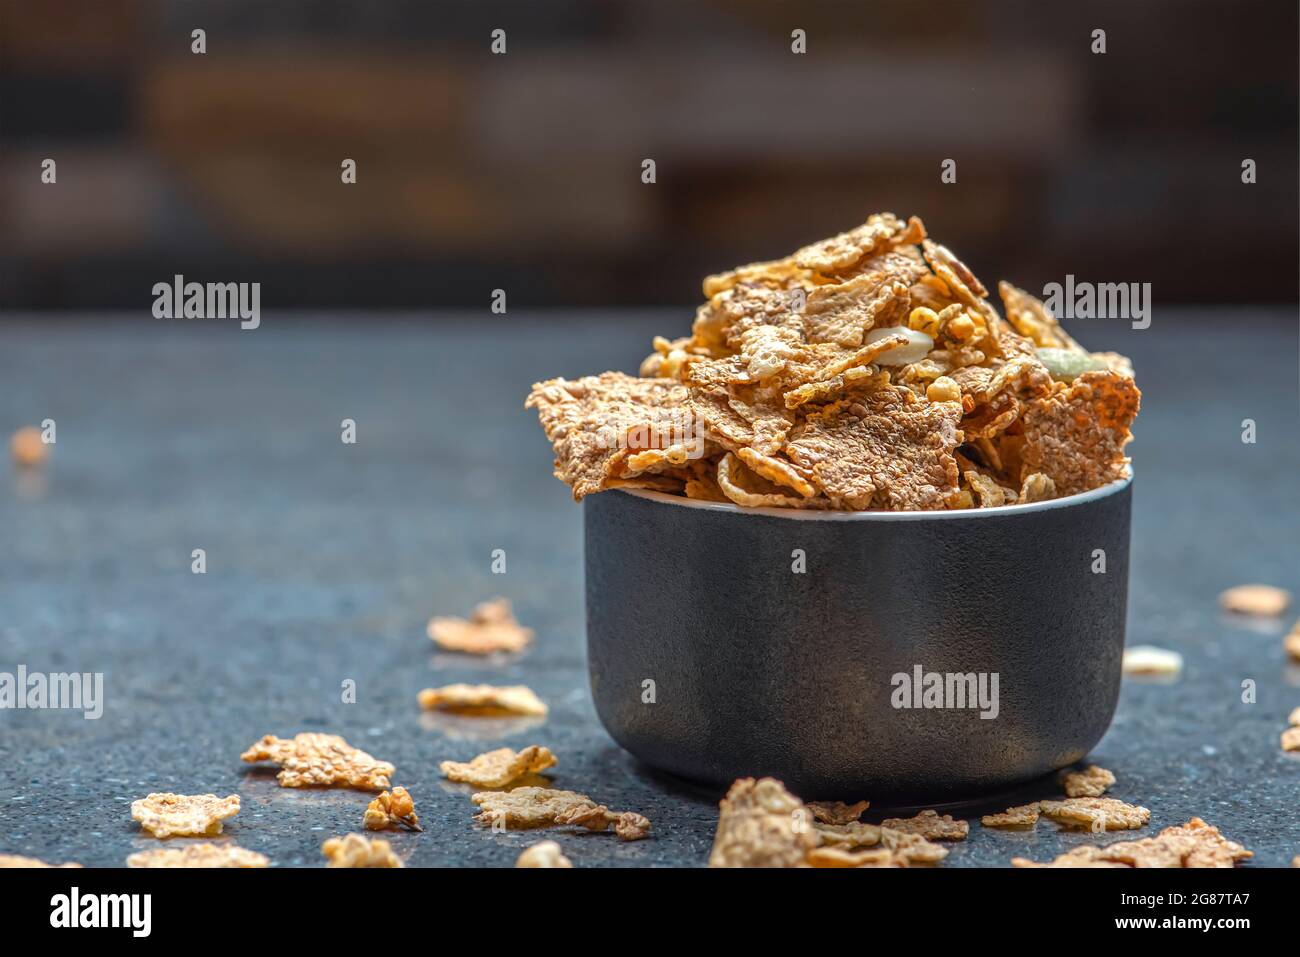 Das Müsli in einer Untertasse auf dem Hintergrund einer Steinplatte trocknen. Gesunde Ernährung und leichte Ernährung Frühstück Konzept, Copy Space Stockfoto